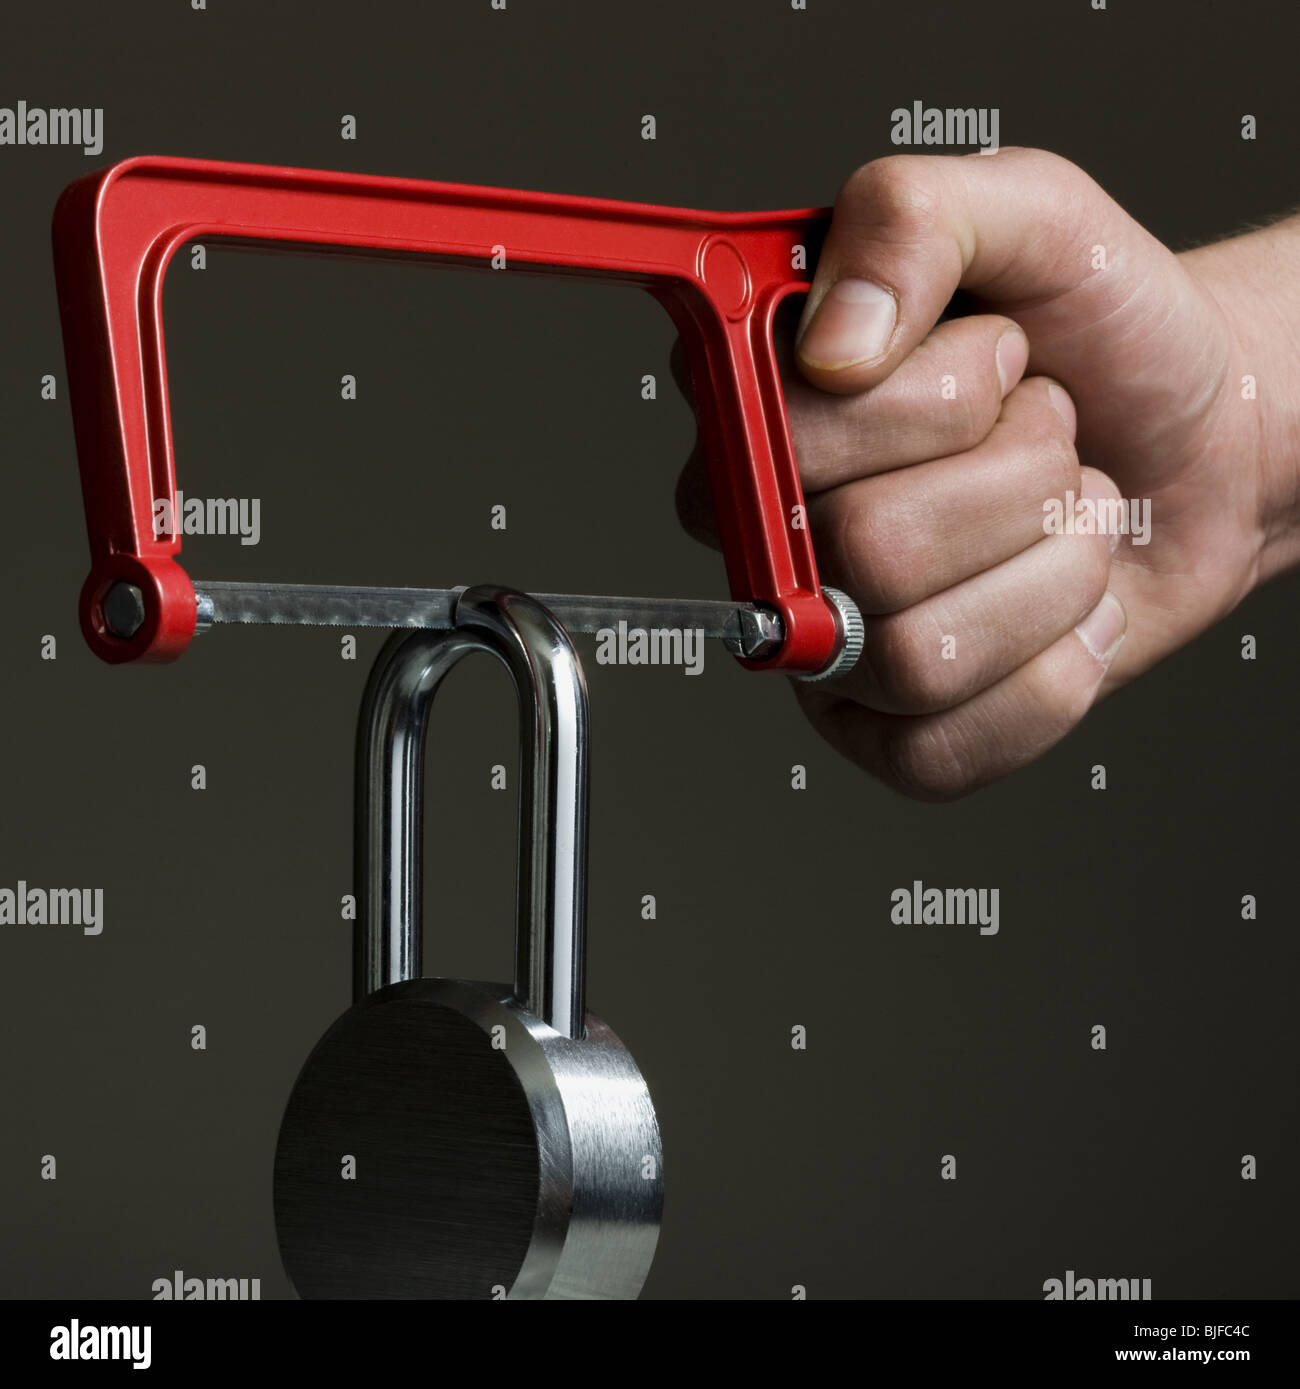 hacksaw cutting a padlock Stock Photo